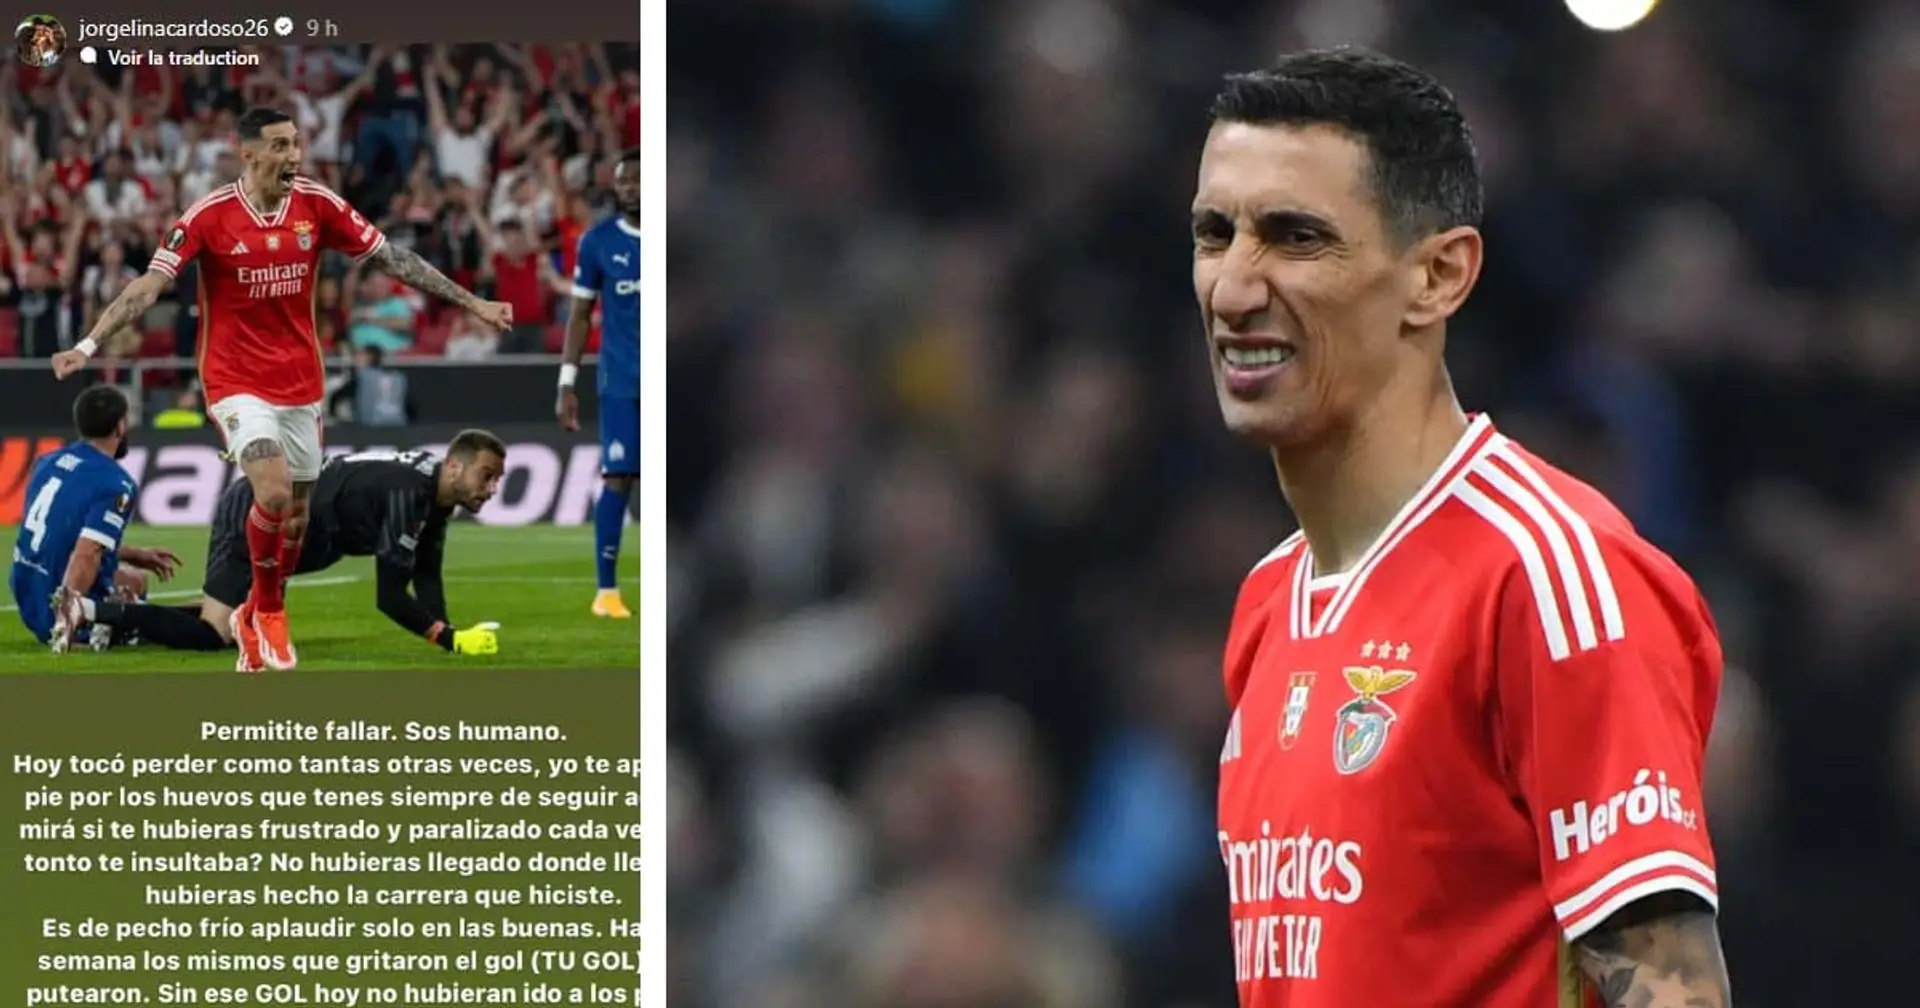 Angel Di Maria insulté par des supporters de Benfica après son tir au but raté vs OM - sa femme prend sa défense